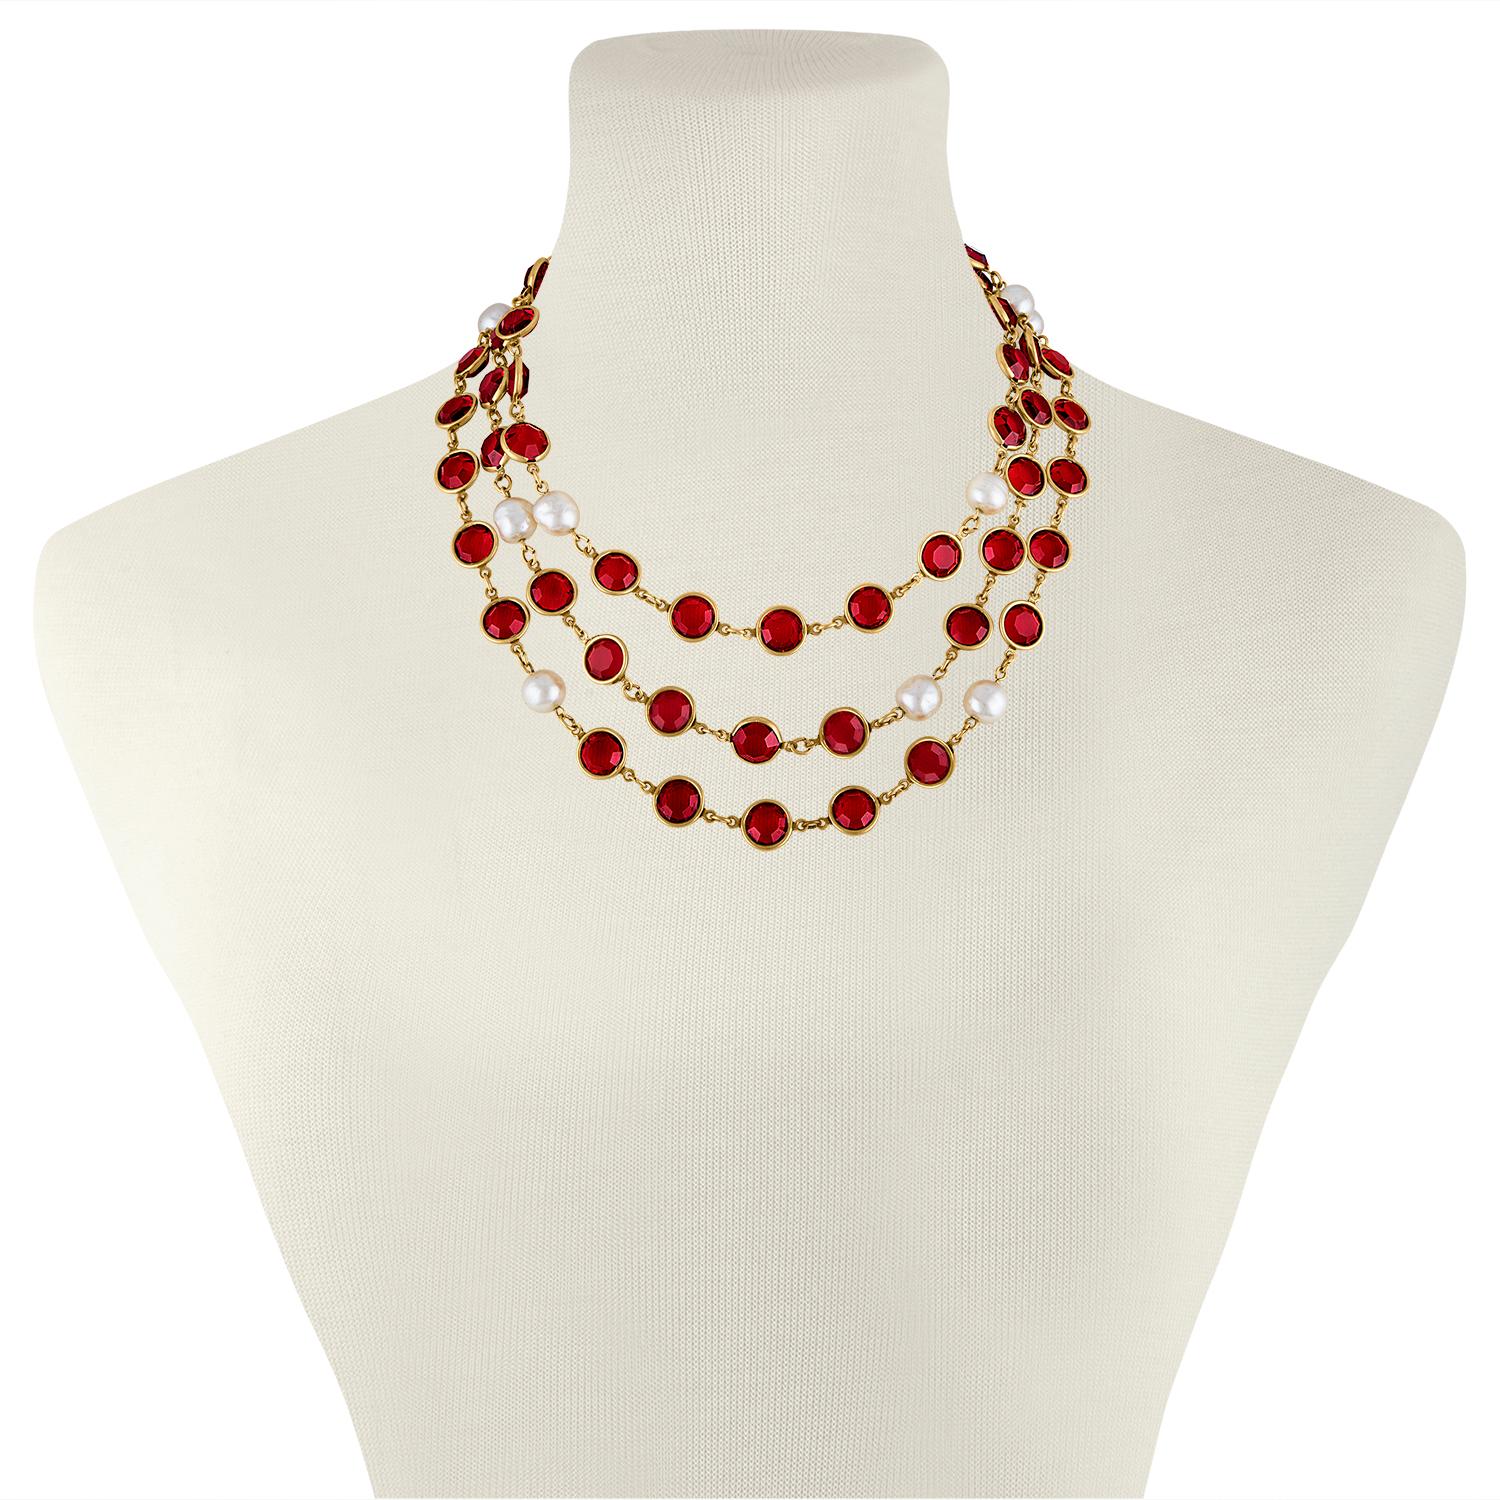 Die Halskette ist von Chanel
Das Stück stammt aus dem Jahr 1981.
Die Halskette ist aus rotem Gripoix mit Kunstperlen.
Die Halskette ist 57